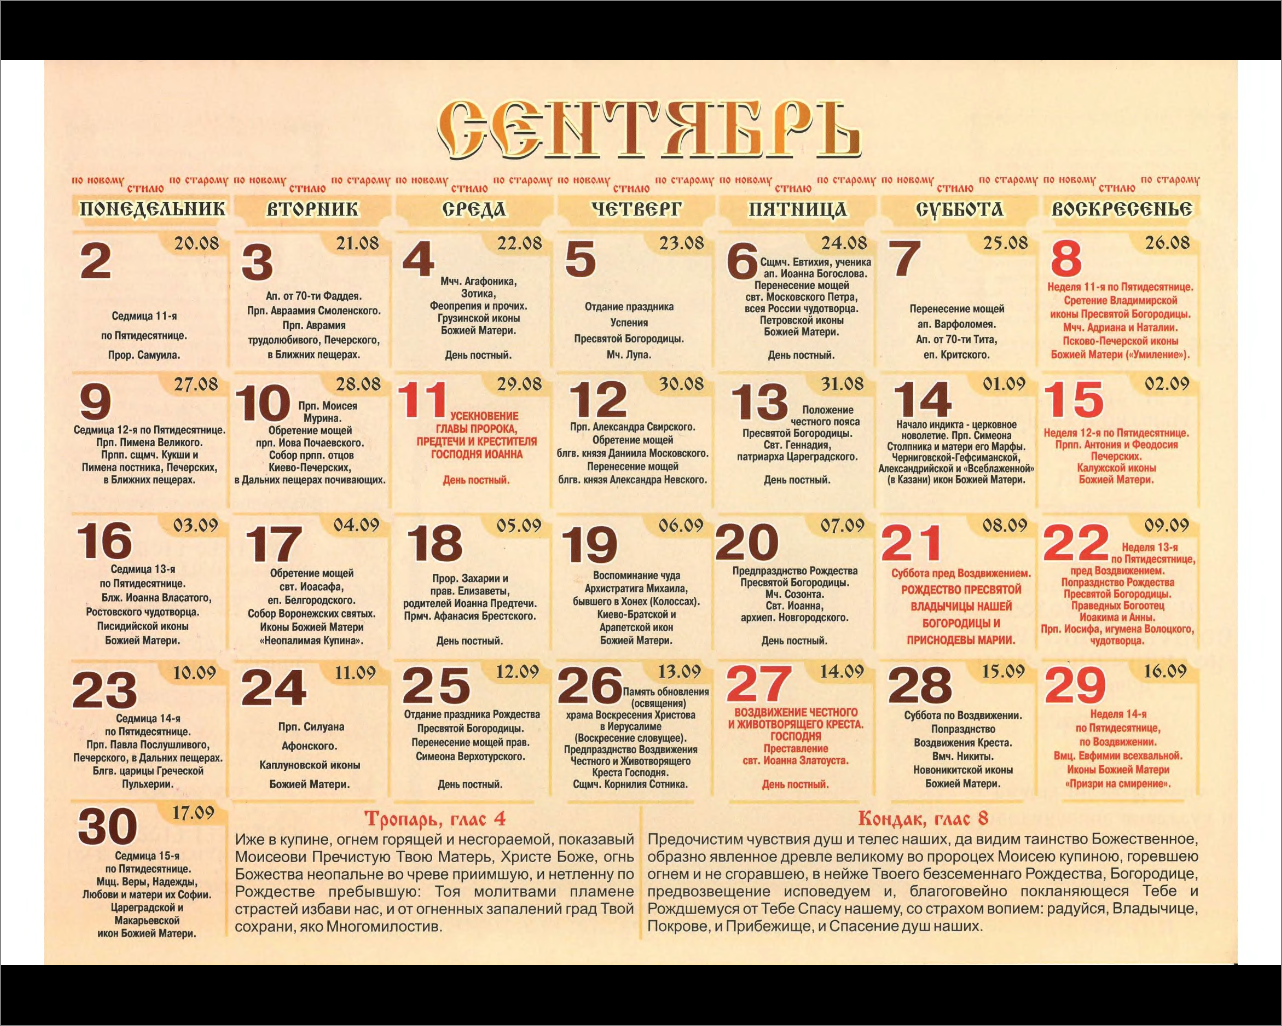 Православные имена в сентябре. Имена по православному календарю. Православный календарь имен. Православный календарь святых по именам.